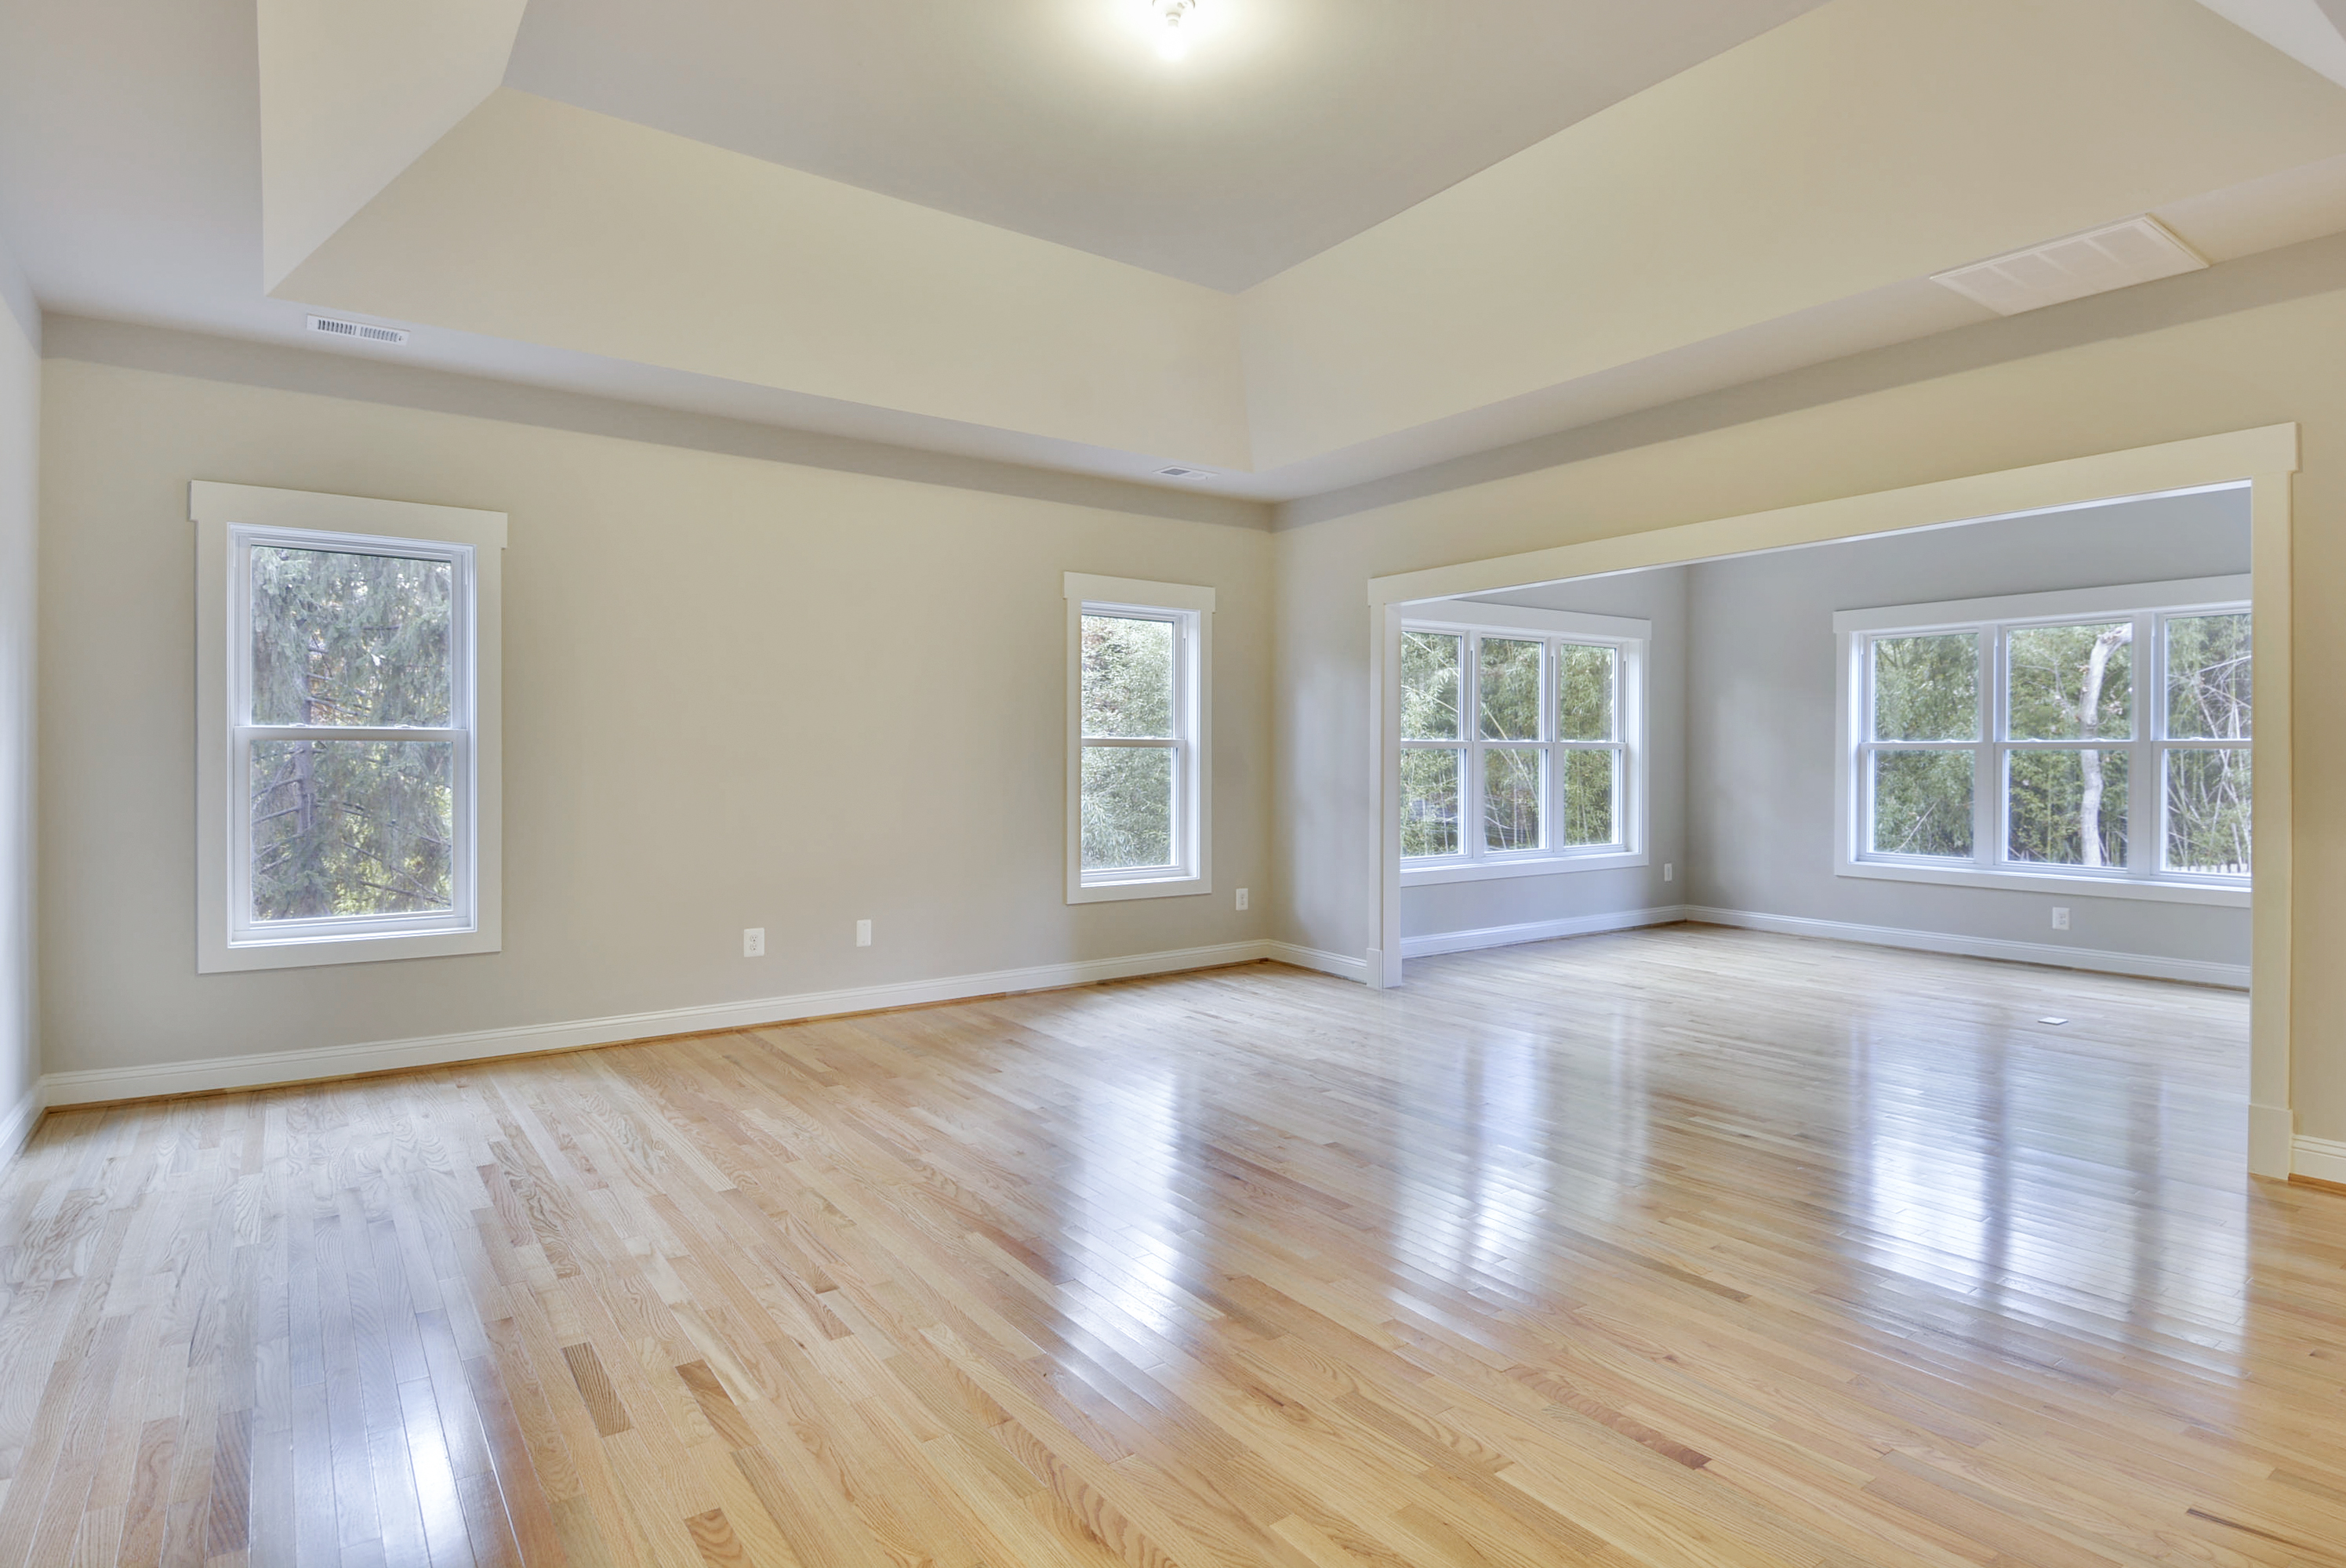 Wood Floor, Light Hardwood Floors